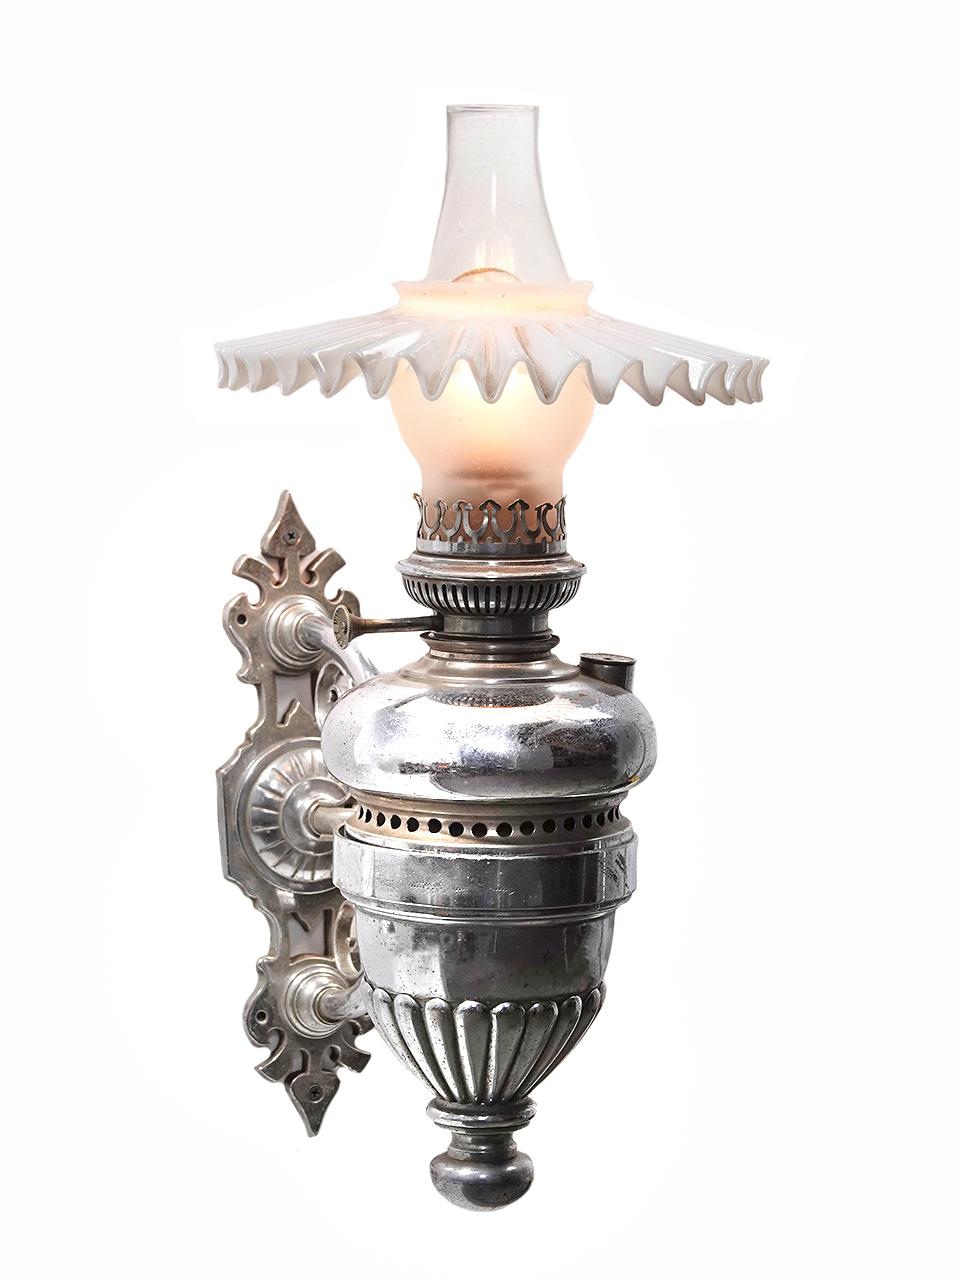 Diese stark verzierte, vernickelte Lampe ist signiert und datiert...Belgian Lamp Co. 1884. Ich habe das Gefühl, dass es sich um einen Pullman-Wagen handelt, kann es aber nicht mit Sicherheit sagen. Dies ist wohl das schönste Exemplar, das wir